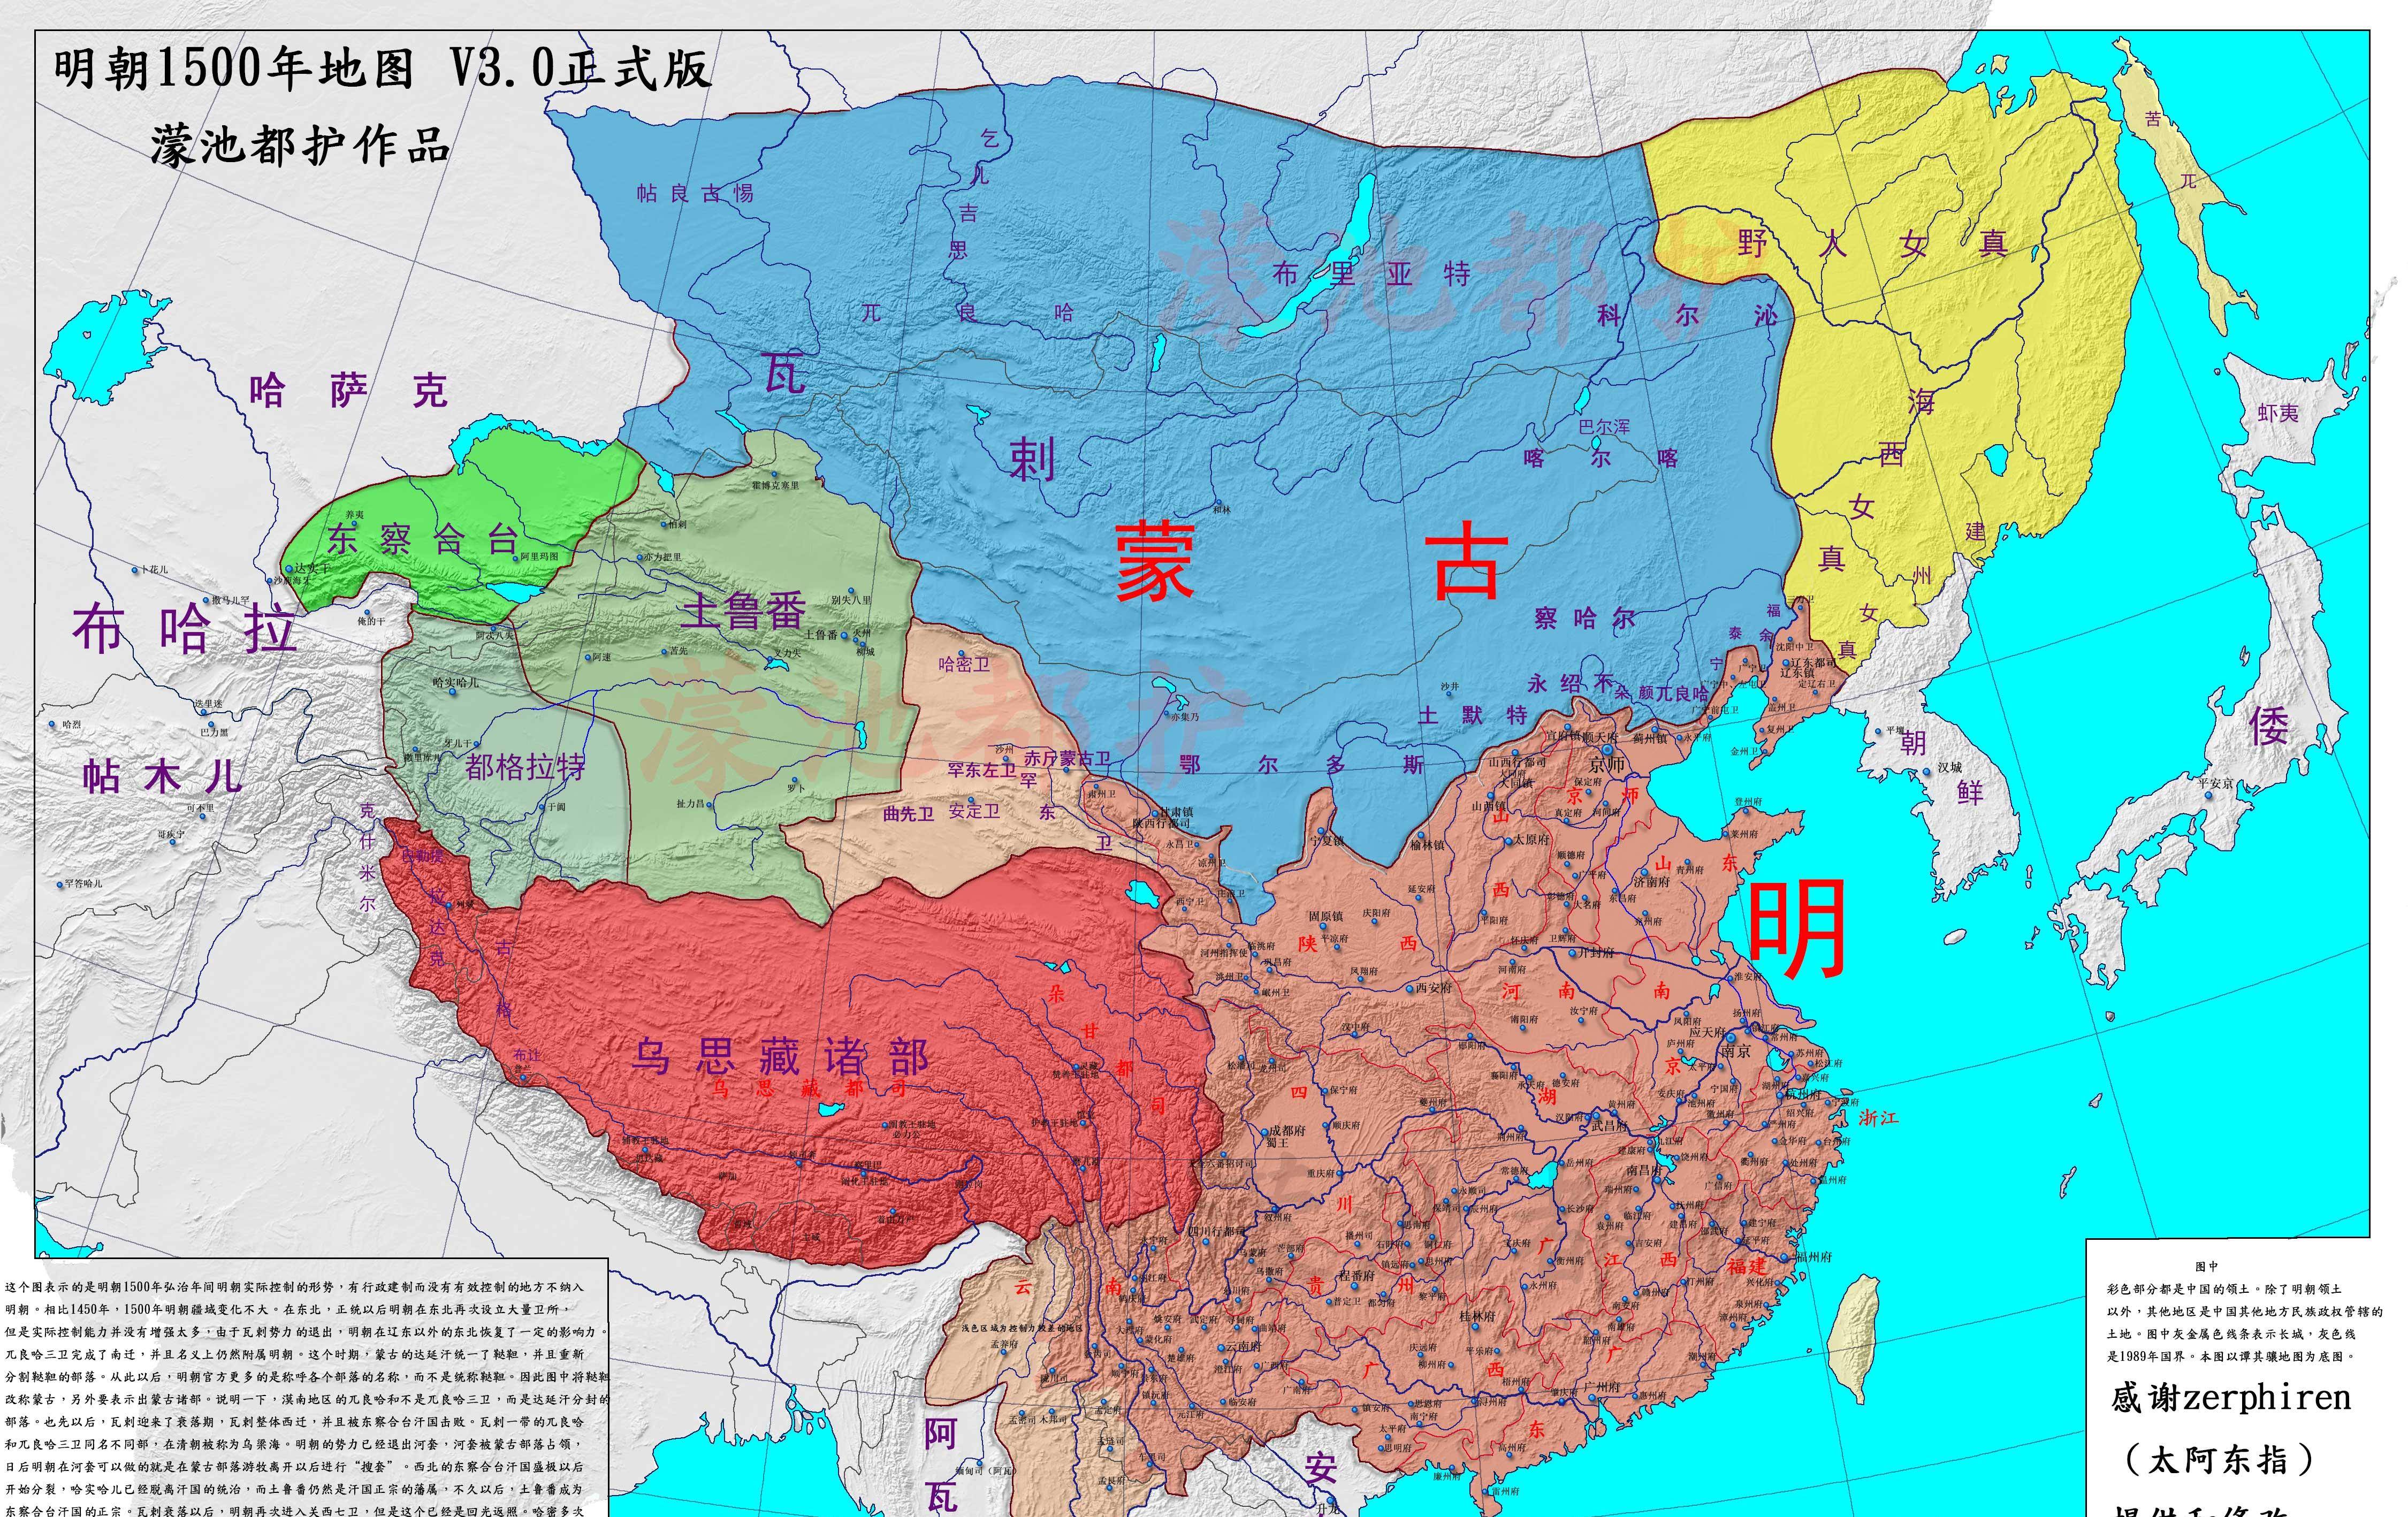 真实的明朝疆域变迁地图:完整展示明朝276年的疆域变化